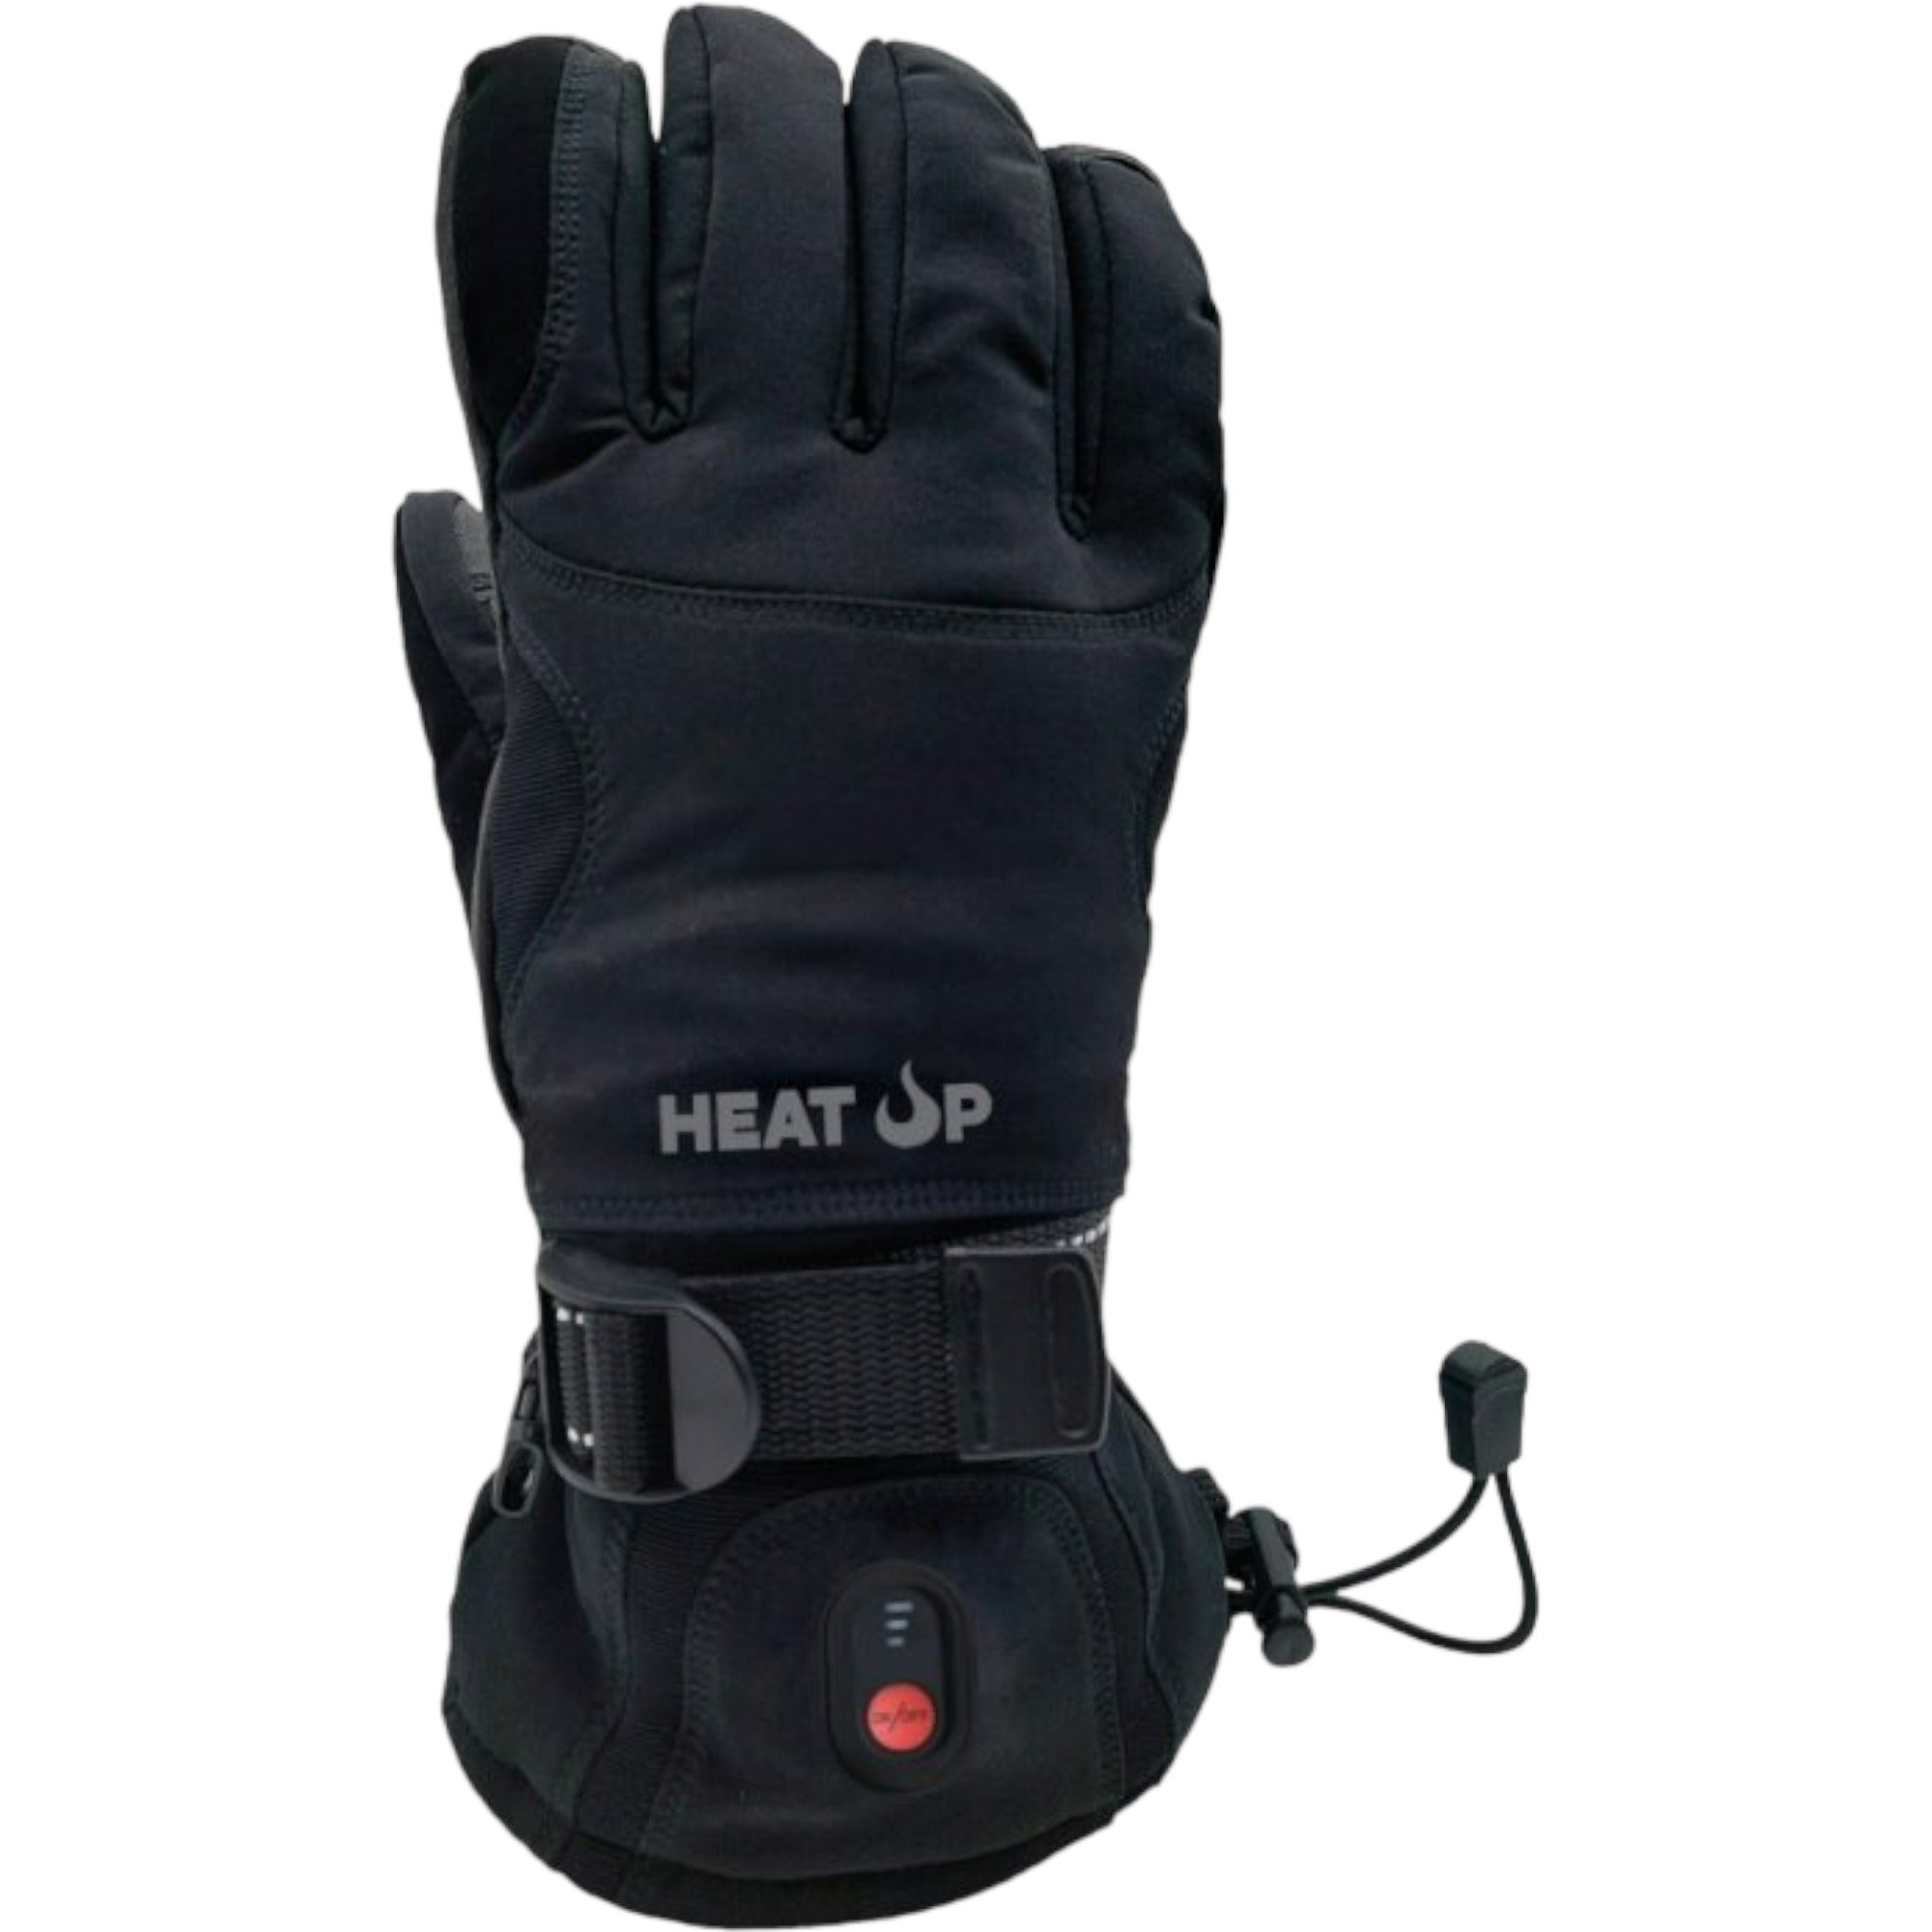 Achetez Heatkeeper Gants thermique Homme Noir chez  pour 12.94 EUR.  EAN: 8718051472371